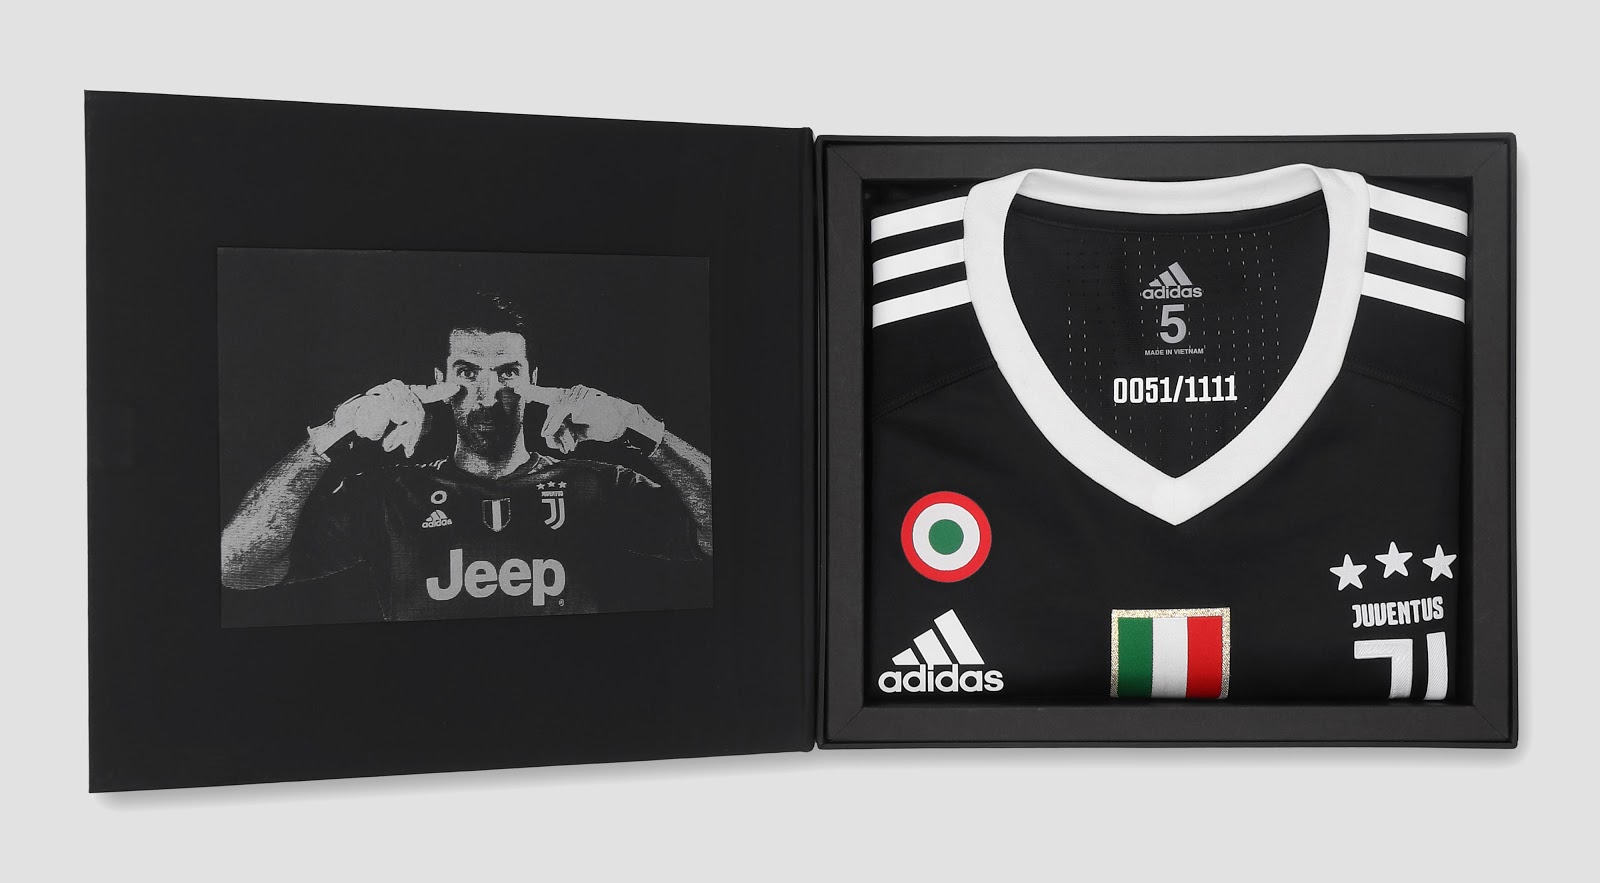 Permanent Vier Bewijs adidas en Juventus lanceren special edition Buffon keepersshirt 2018 -  Voetbalshirts.com